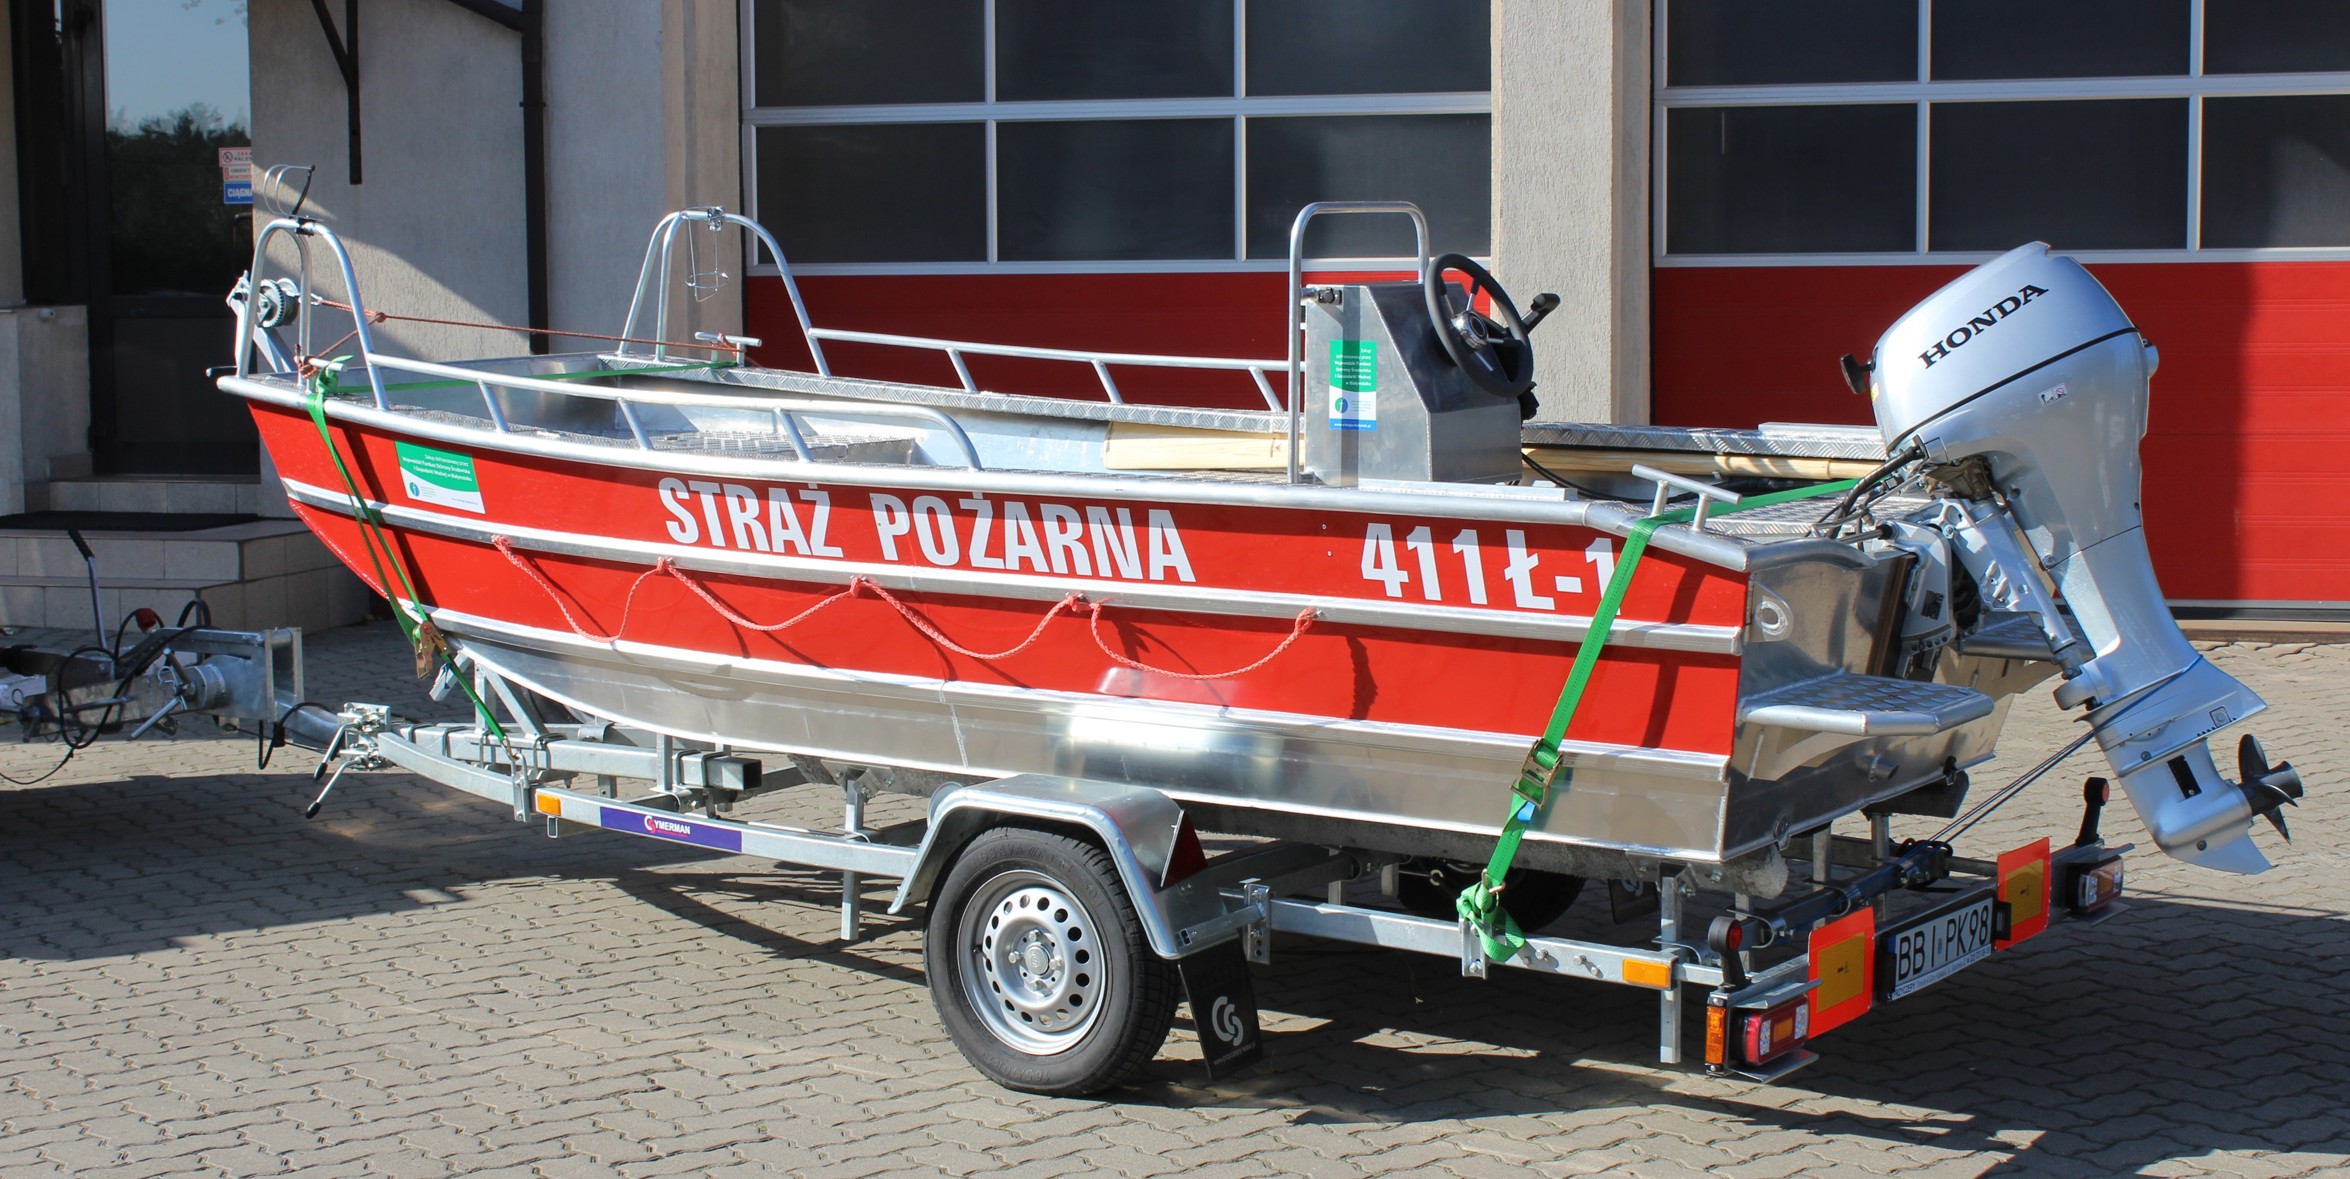 Zdjęcie przedstawia pożarniczą łódź śrubowa płaskodenna Marims 400 stojącą na przyczepie służącej do jej transportu na tle strażnicy.